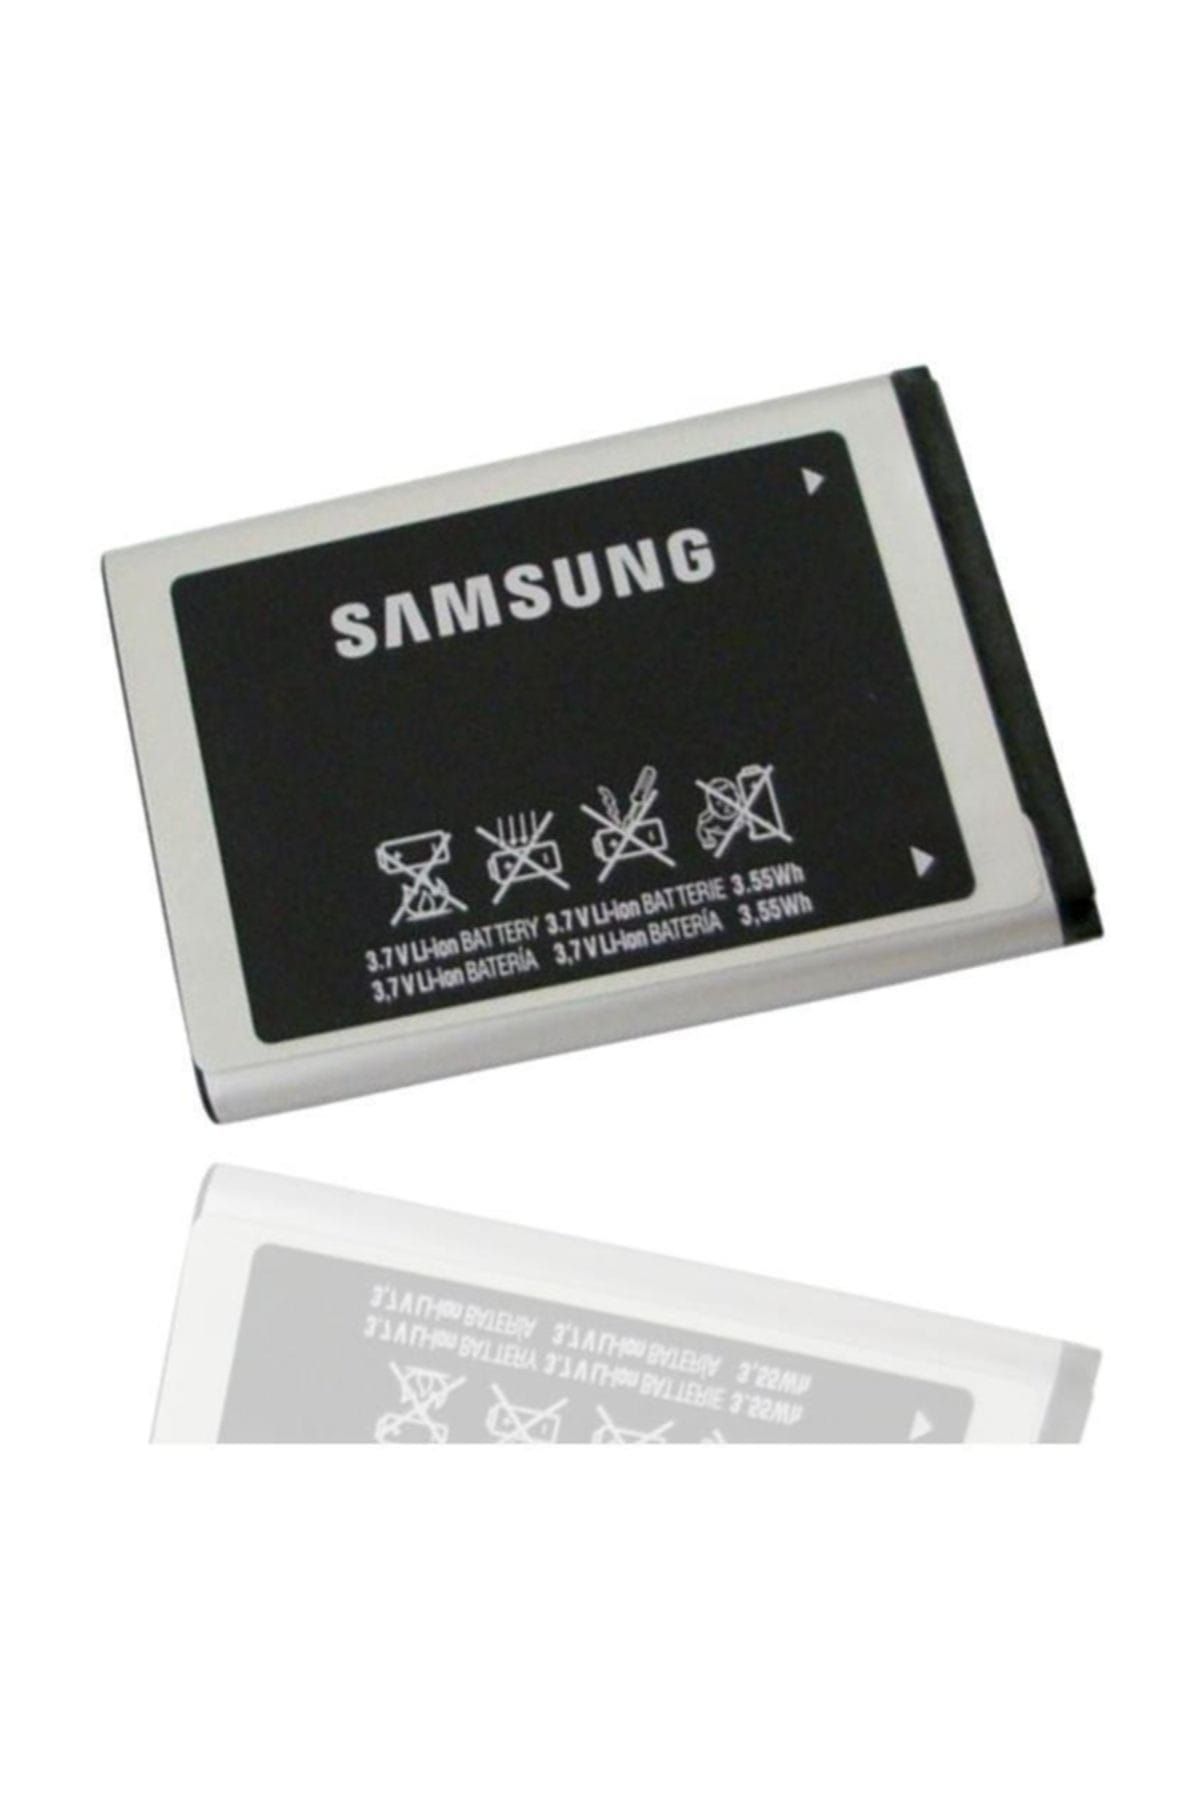 Samsung L700 C3510 S5600 S5620 C3322 5610 Orj Batarya Pil